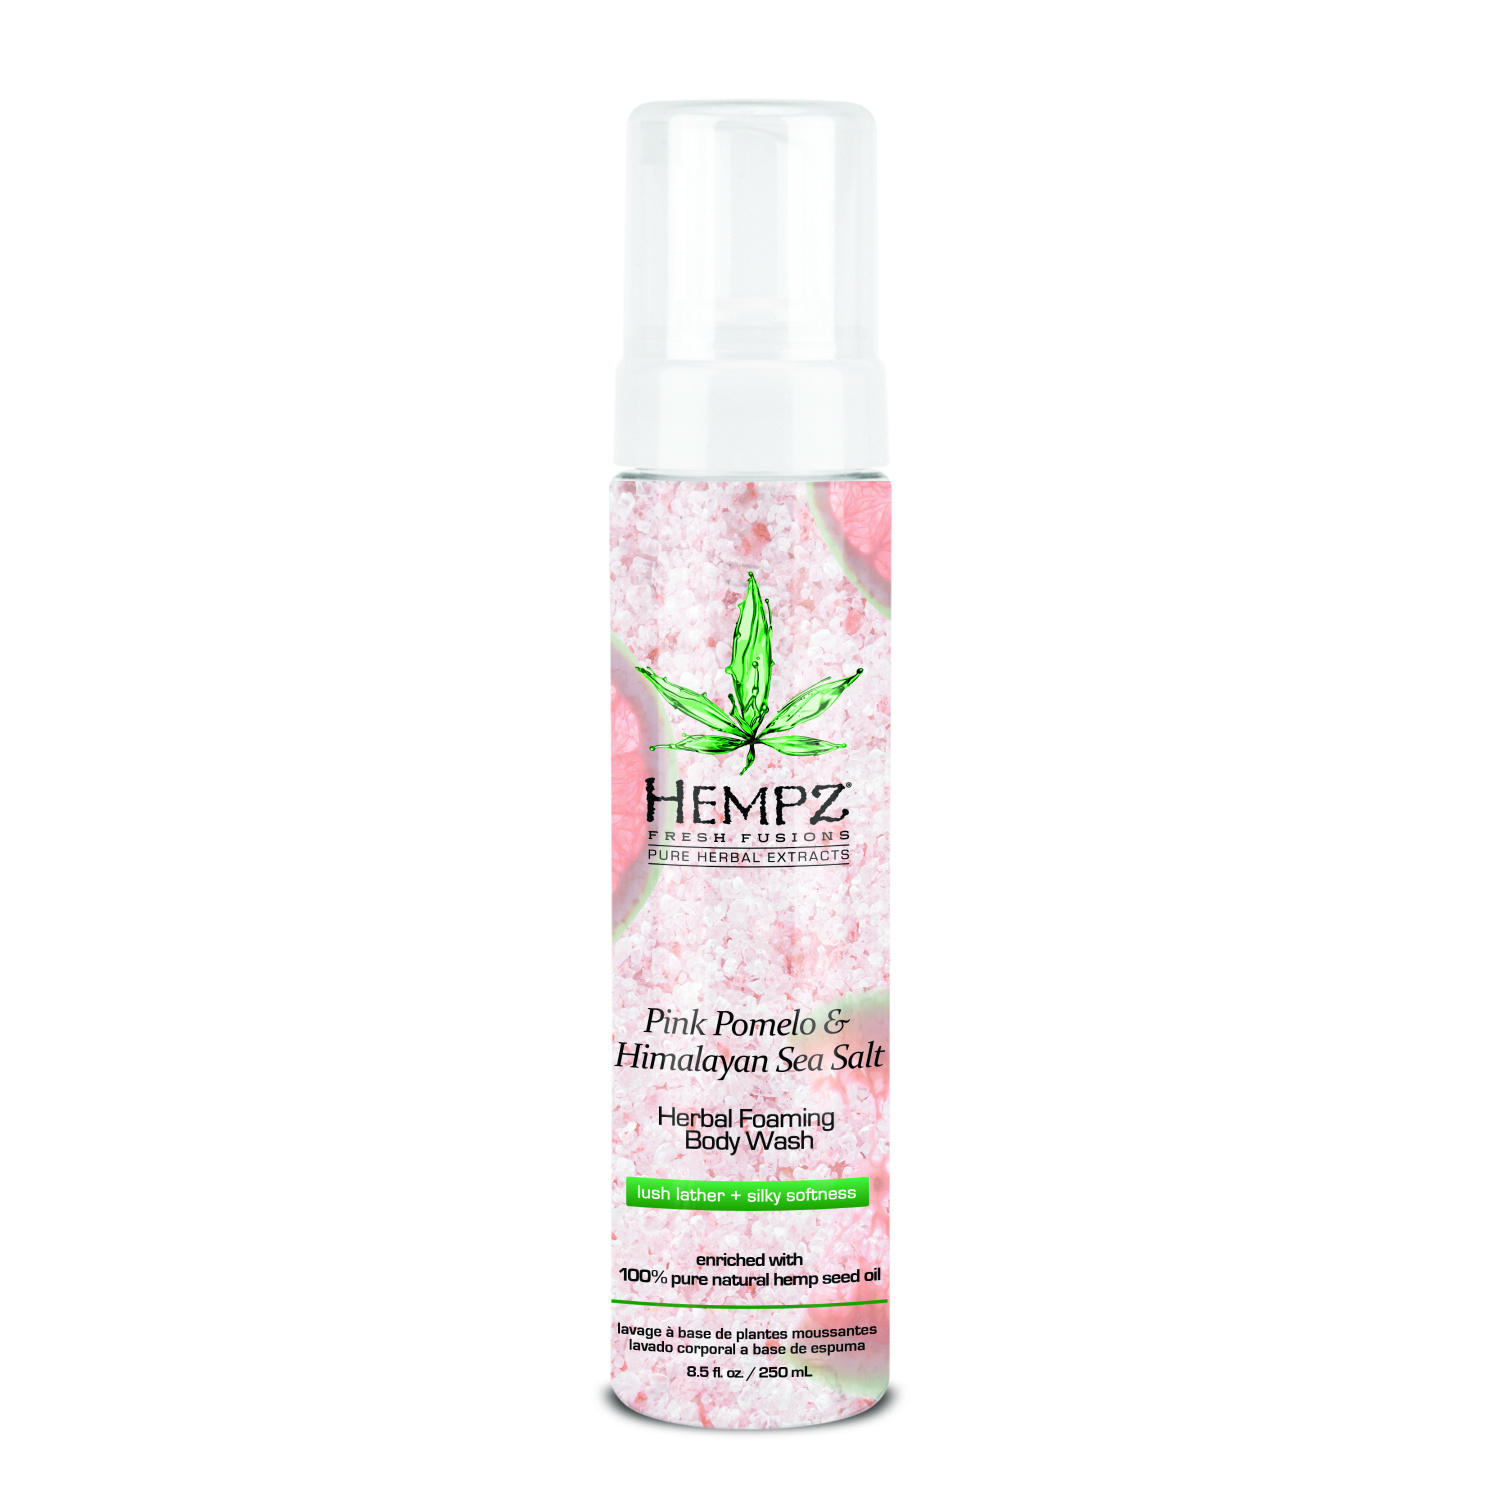 Hempz Pink Pomelo & Himalayan Sea Salt Herbal Foaming Body Wash 250ml. - интернет-магазин профессиональной косметики Spadream, изображение 26881